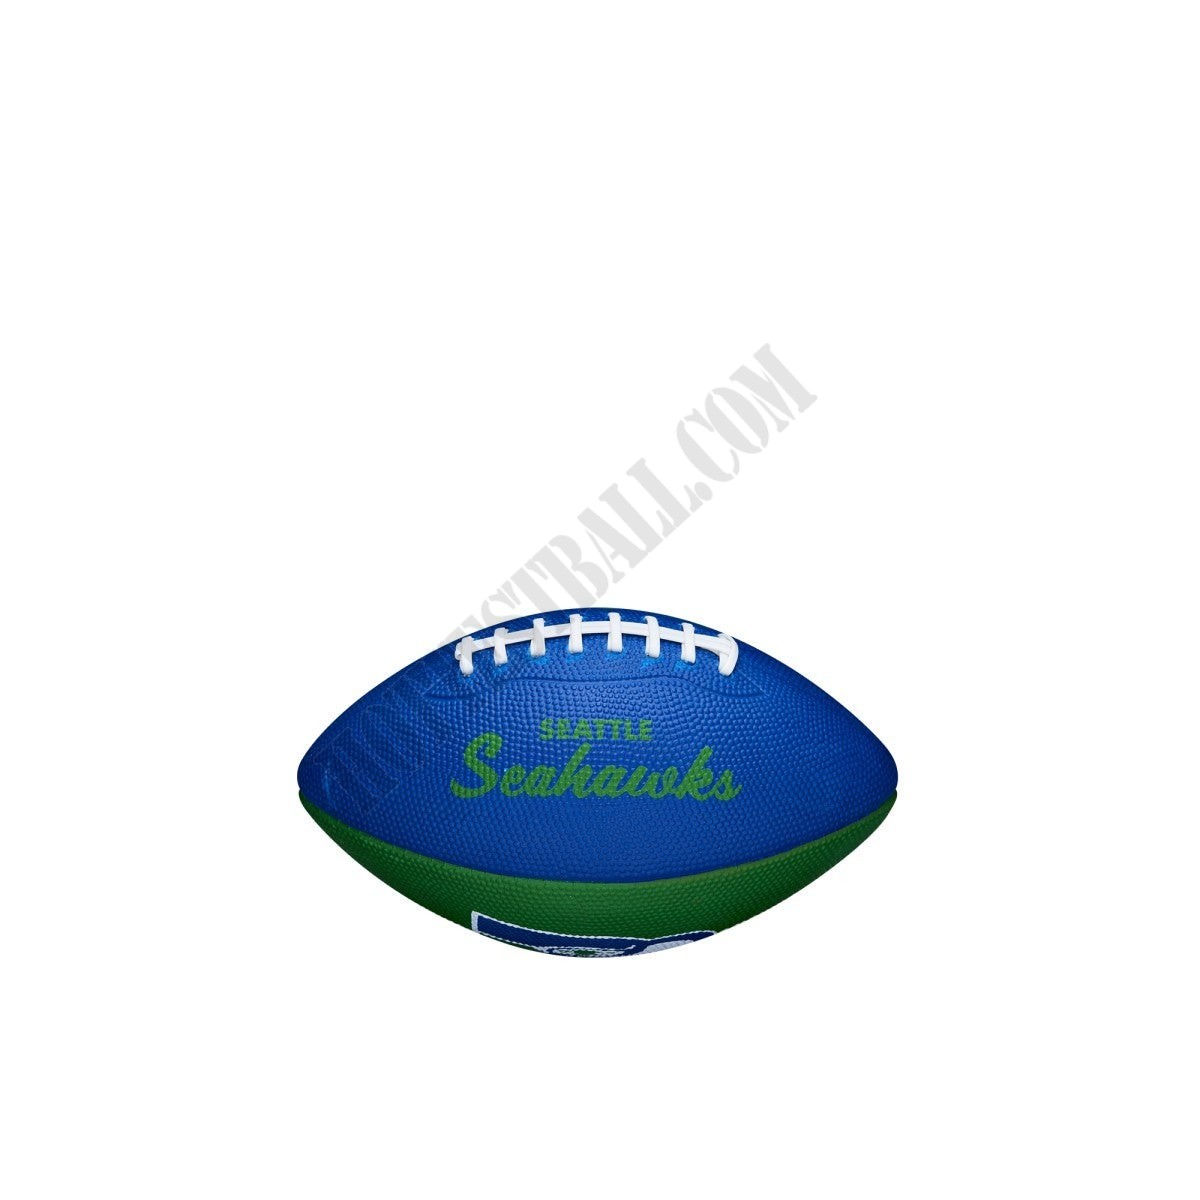 NFL Retro Mini Football - Seattle Seahawks ● Wilson Promotions - NFL Retro Mini Football - Seattle Seahawks ● Wilson Promotions